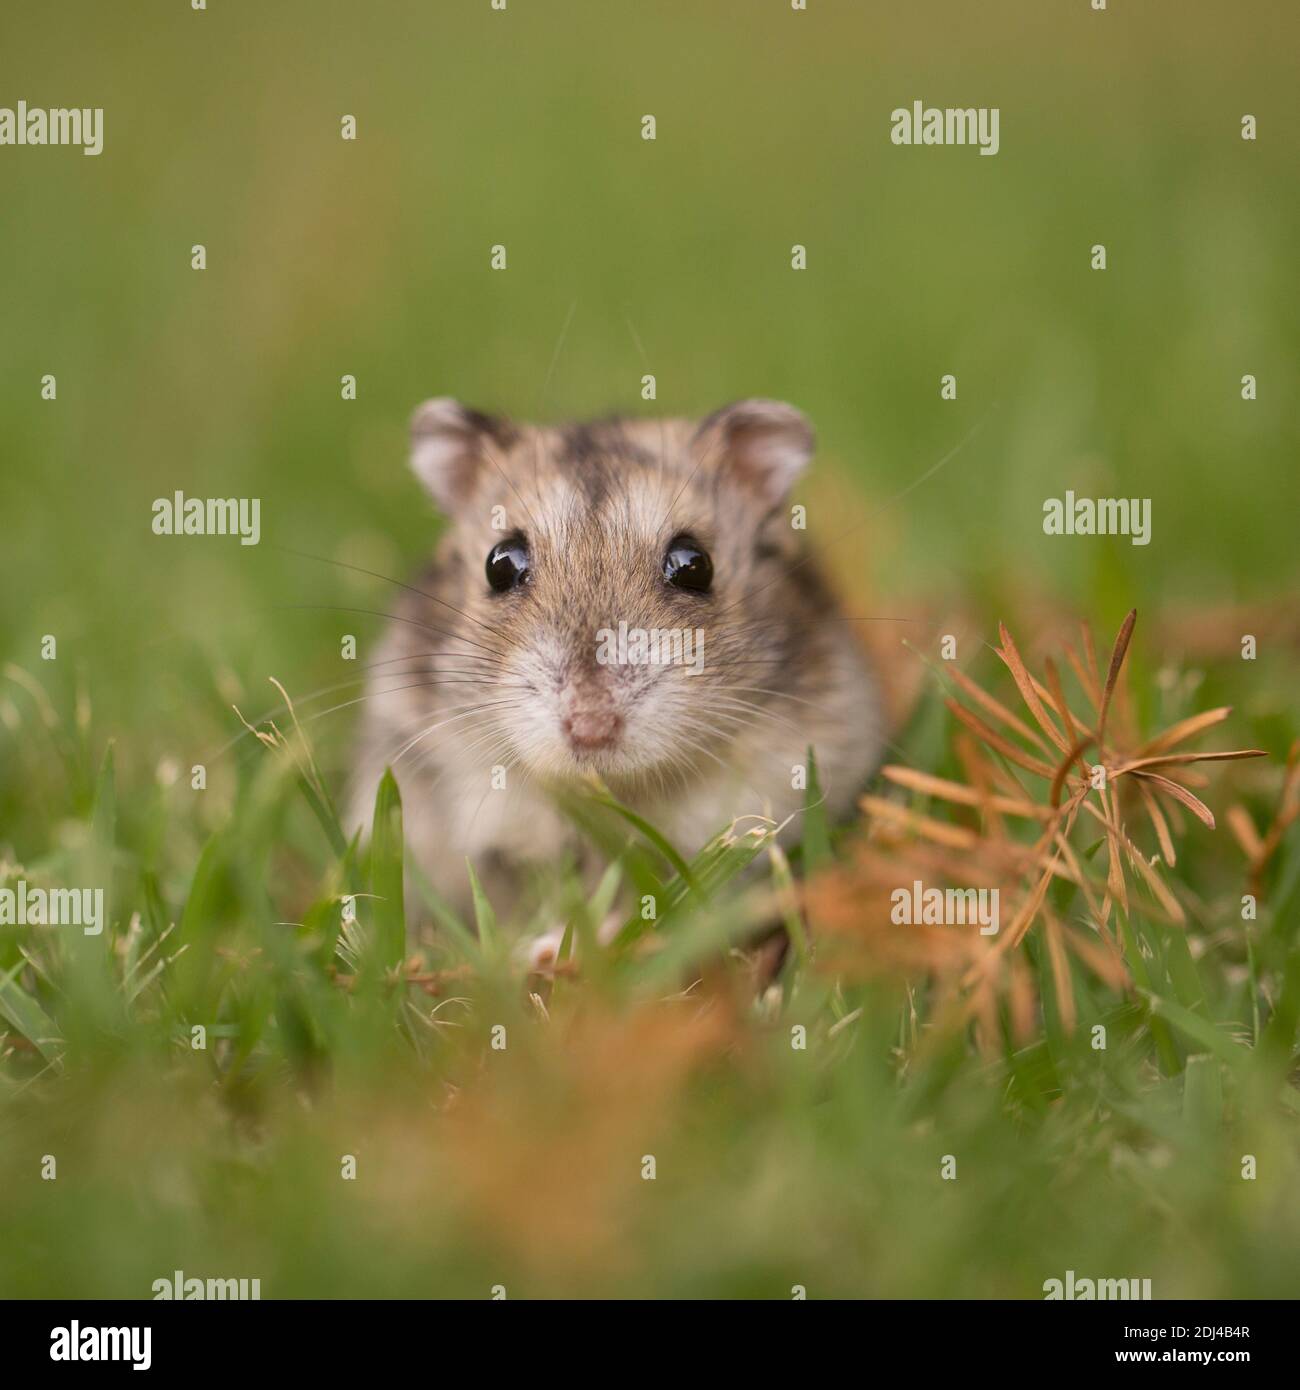 Nahaufnahme und selektiven Fokus eines Dshungarischen Zwerghamster (Phodopus sungorus), auch als die Sibirischen hamster bekannt, auf dem Rasen. In Israel im Juli fotografiert. Stockfoto